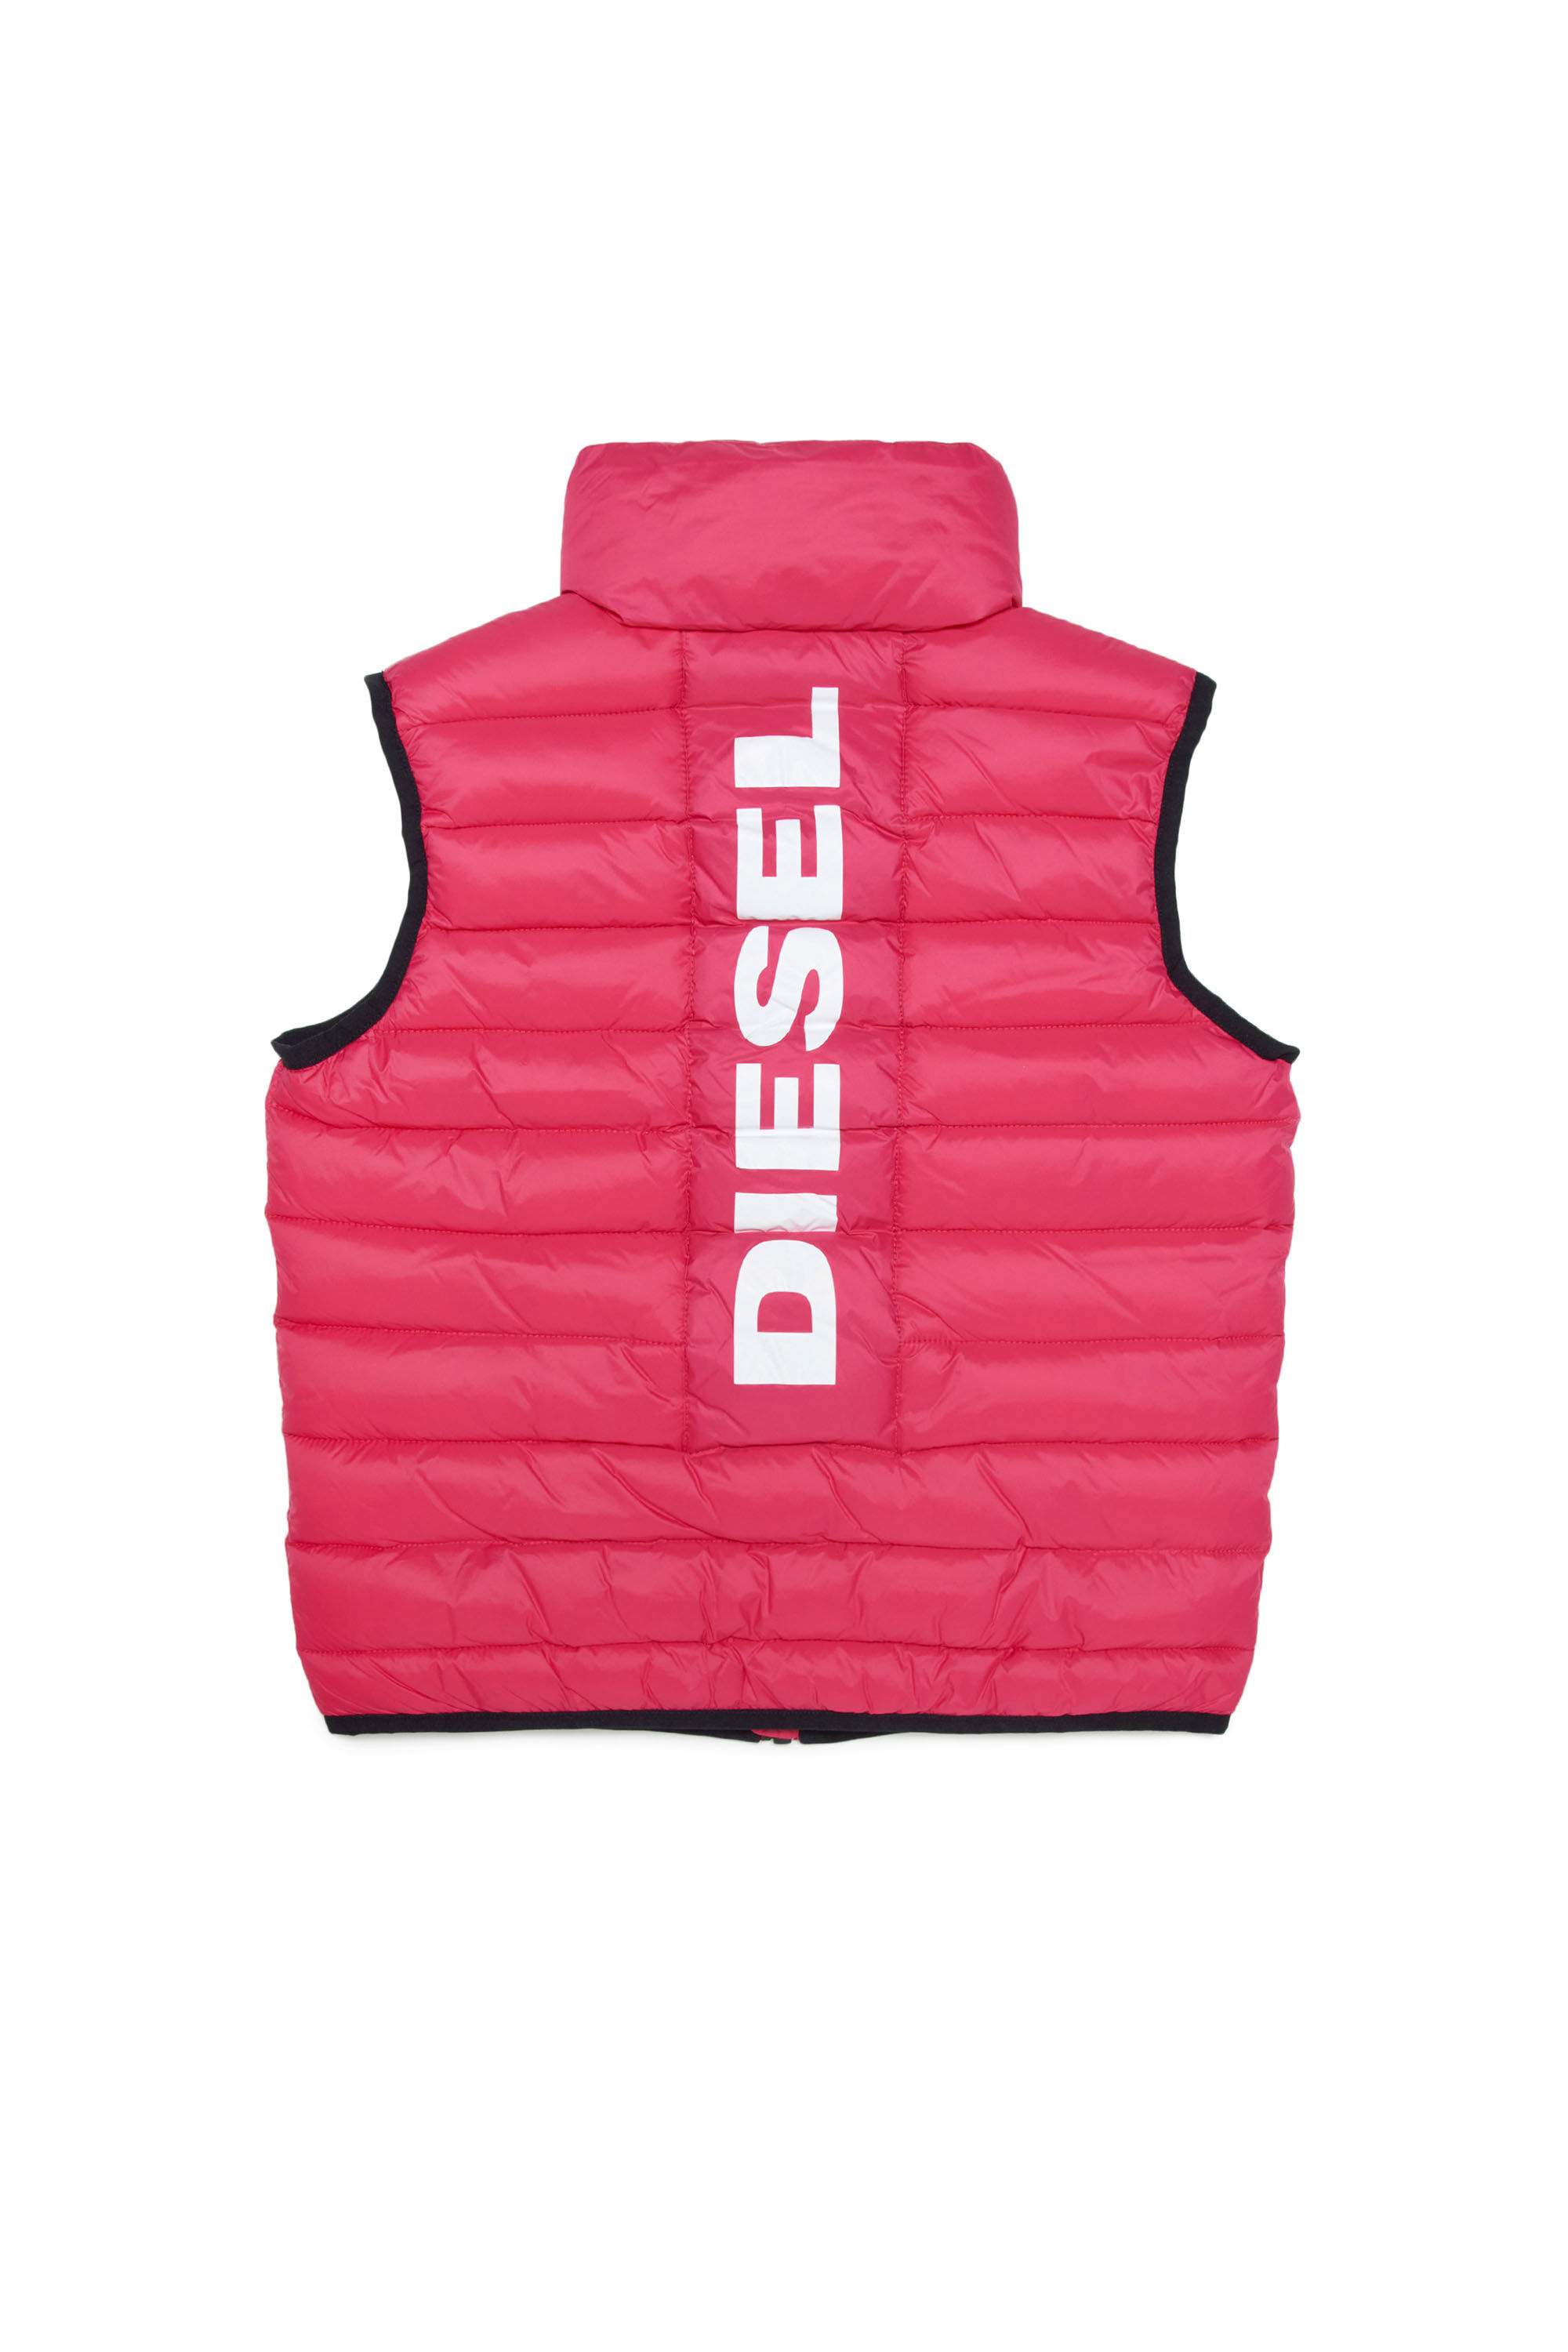 Diesel - JOLICE-SL, Rosa - Image 2